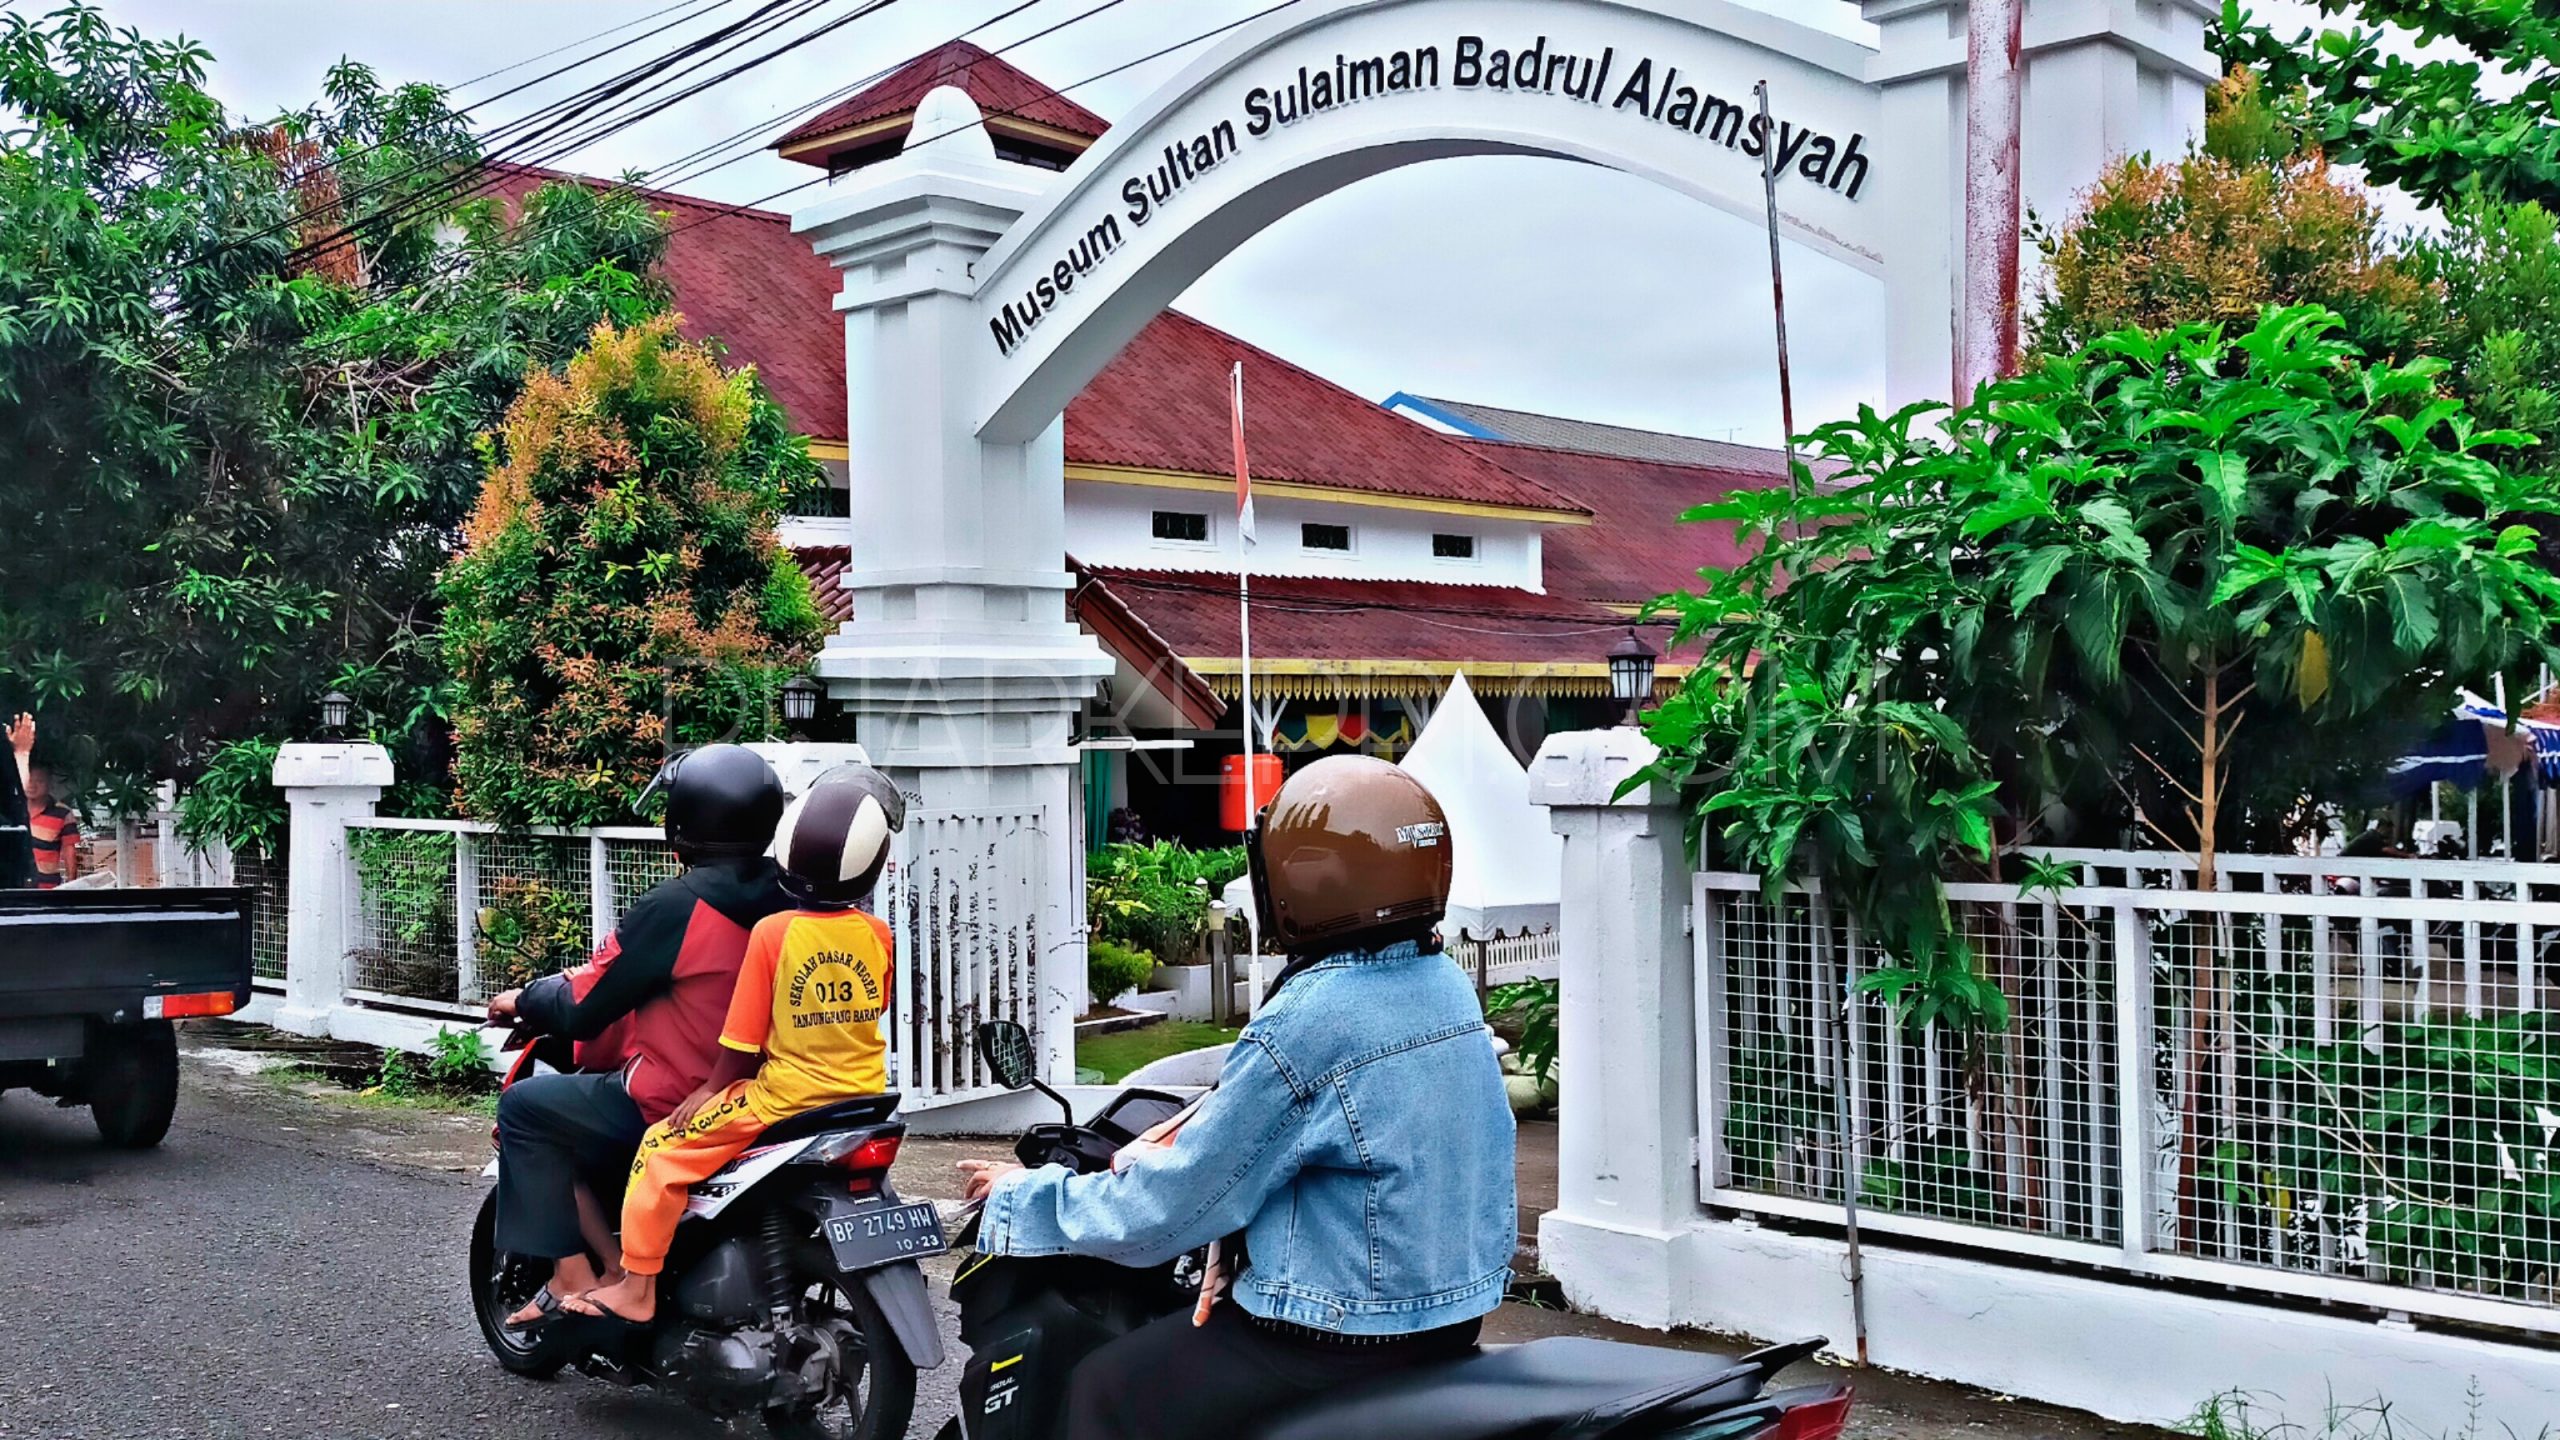 Museum Sultan Sulaiman Badrul Alamsyah, di Jalan Ketapang, Kelurahan Kamboja, Kecamatan Tanjungpinang Barat, Tanjungpinang, Selasa (26/7/2022). (Foto: pijarkepri.com)